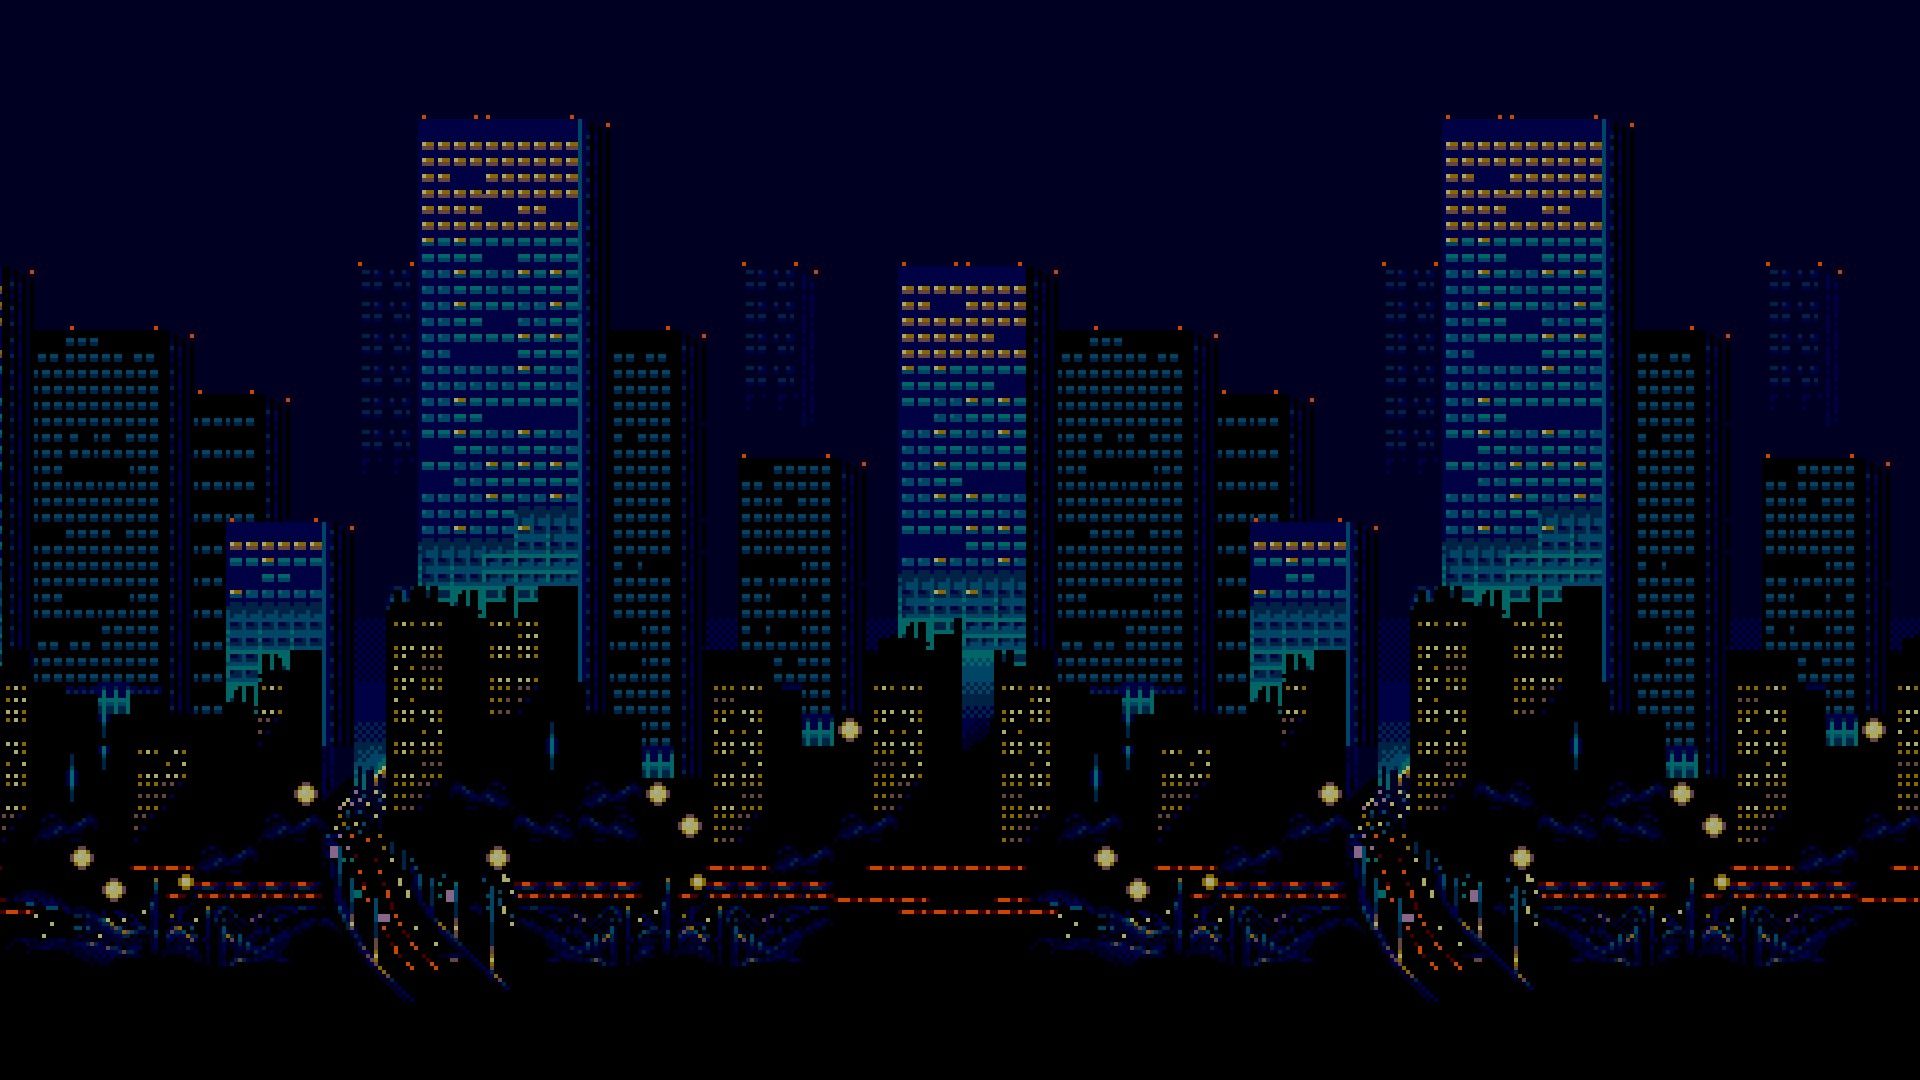 HD Wallpaper Of Pixel Bit Sega